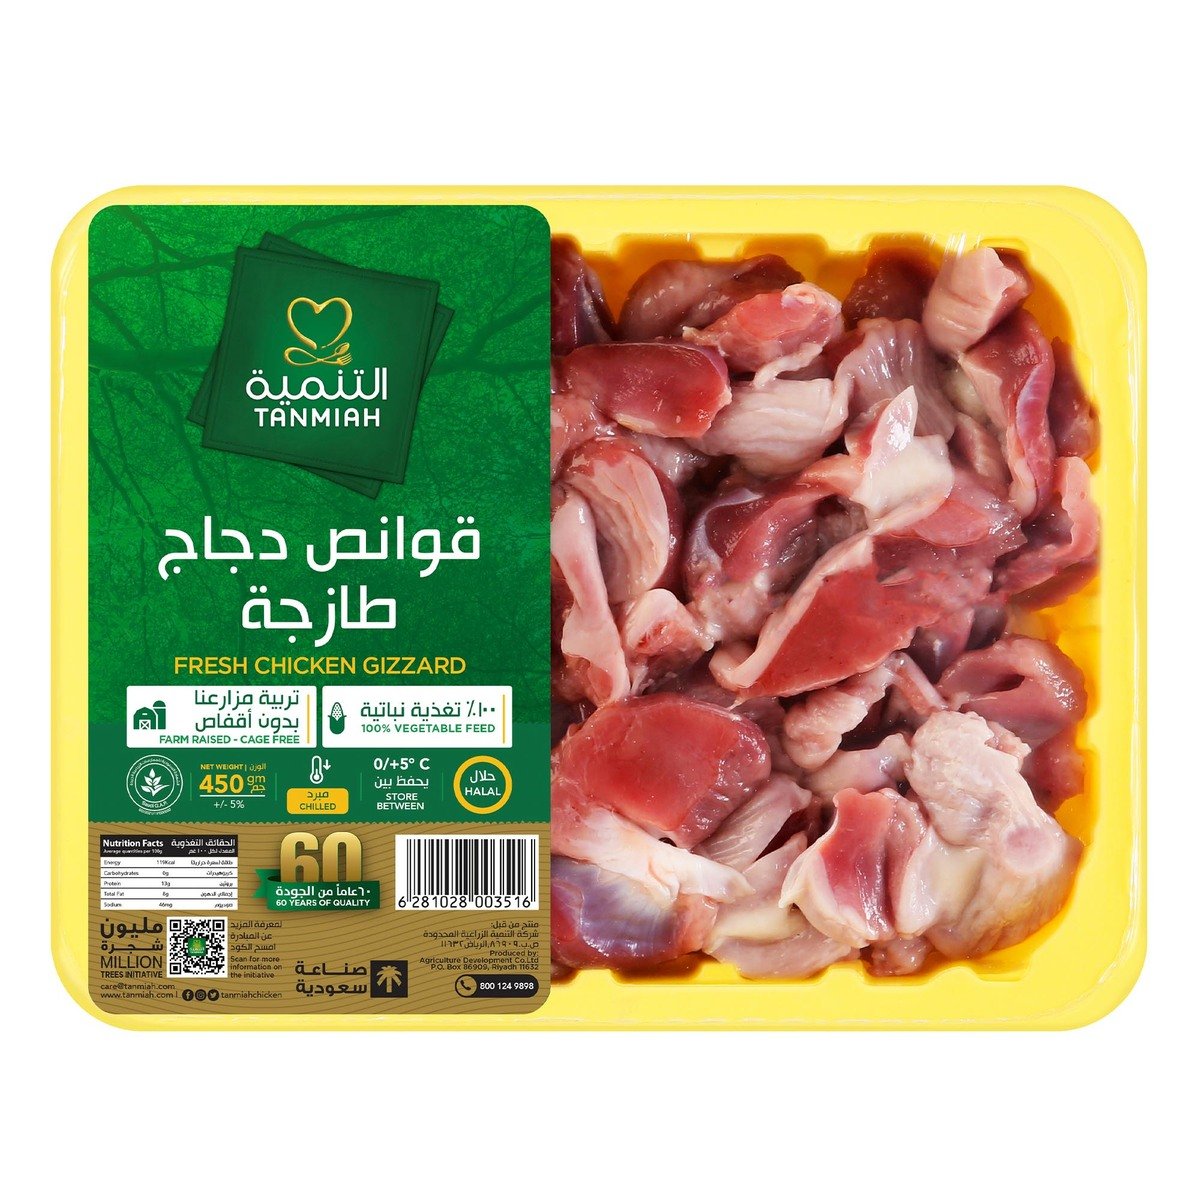 اشتري قم بشراء التنمية قوانص دجاج 450 جم Online at Best Price من الموقع - من لولو هايبر ماركت Poultry Offals في السعودية